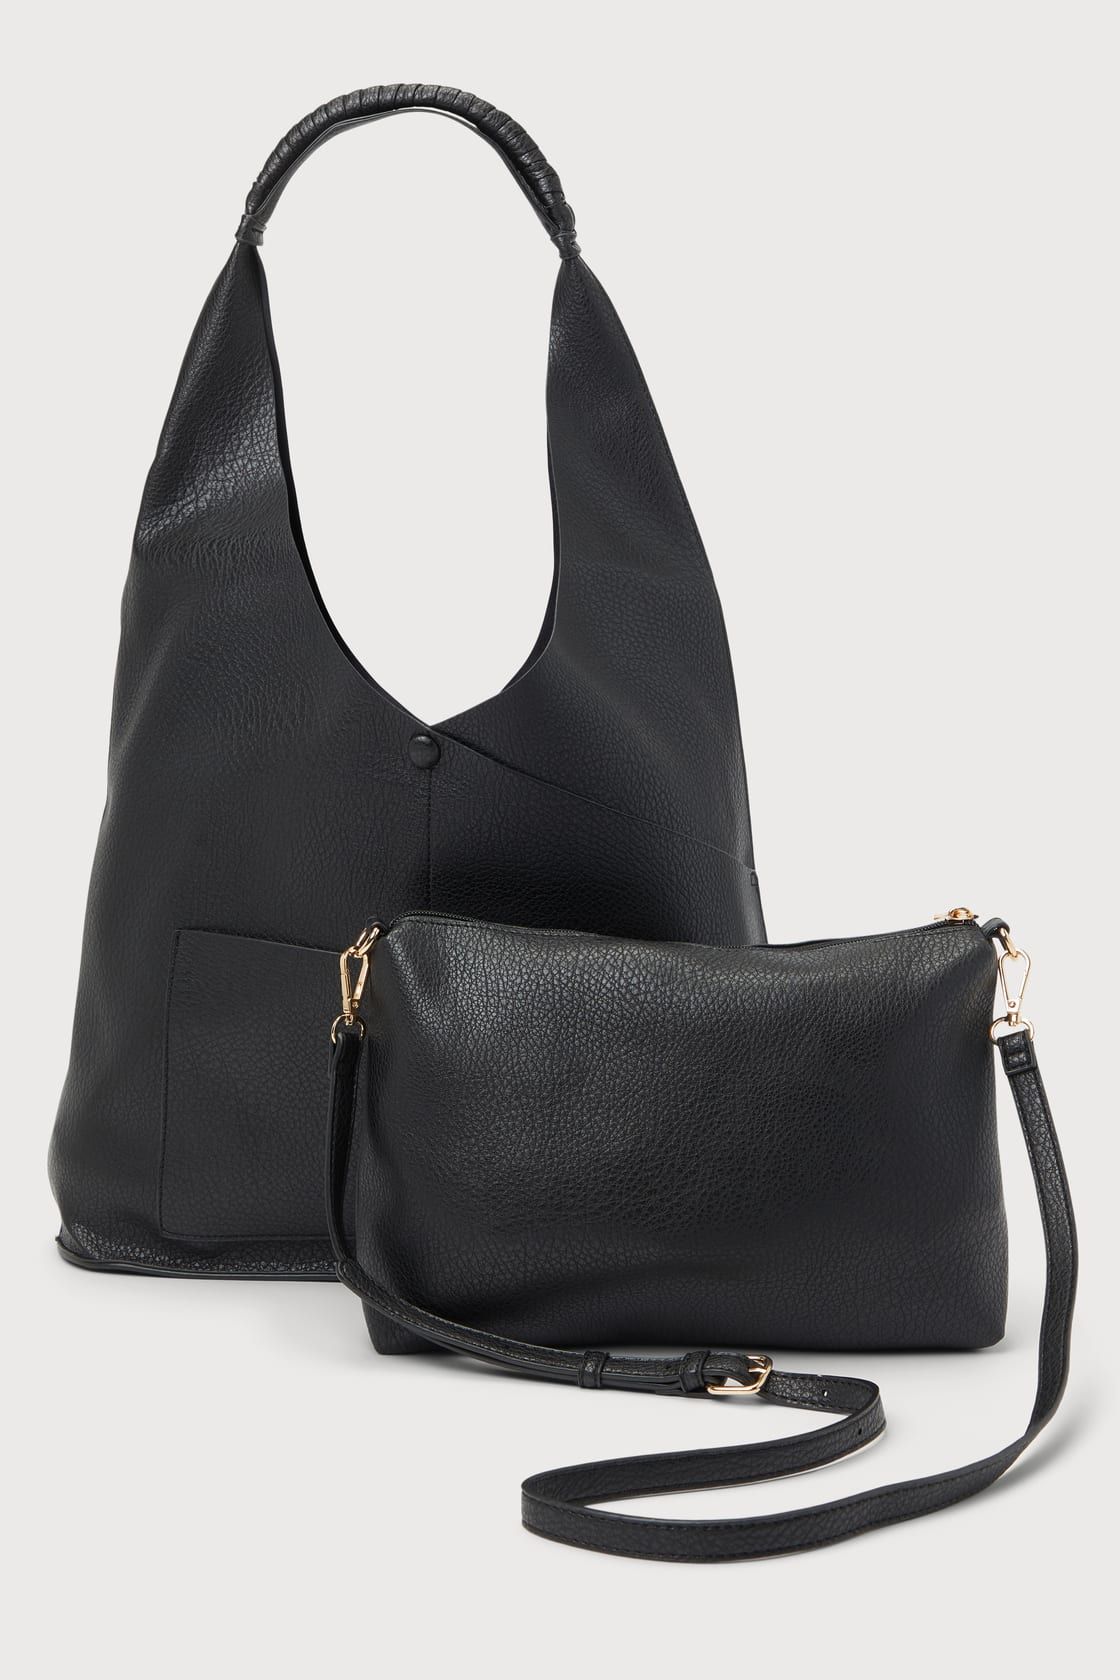 Quintessential Cutie Black Tote Bag | Lulus